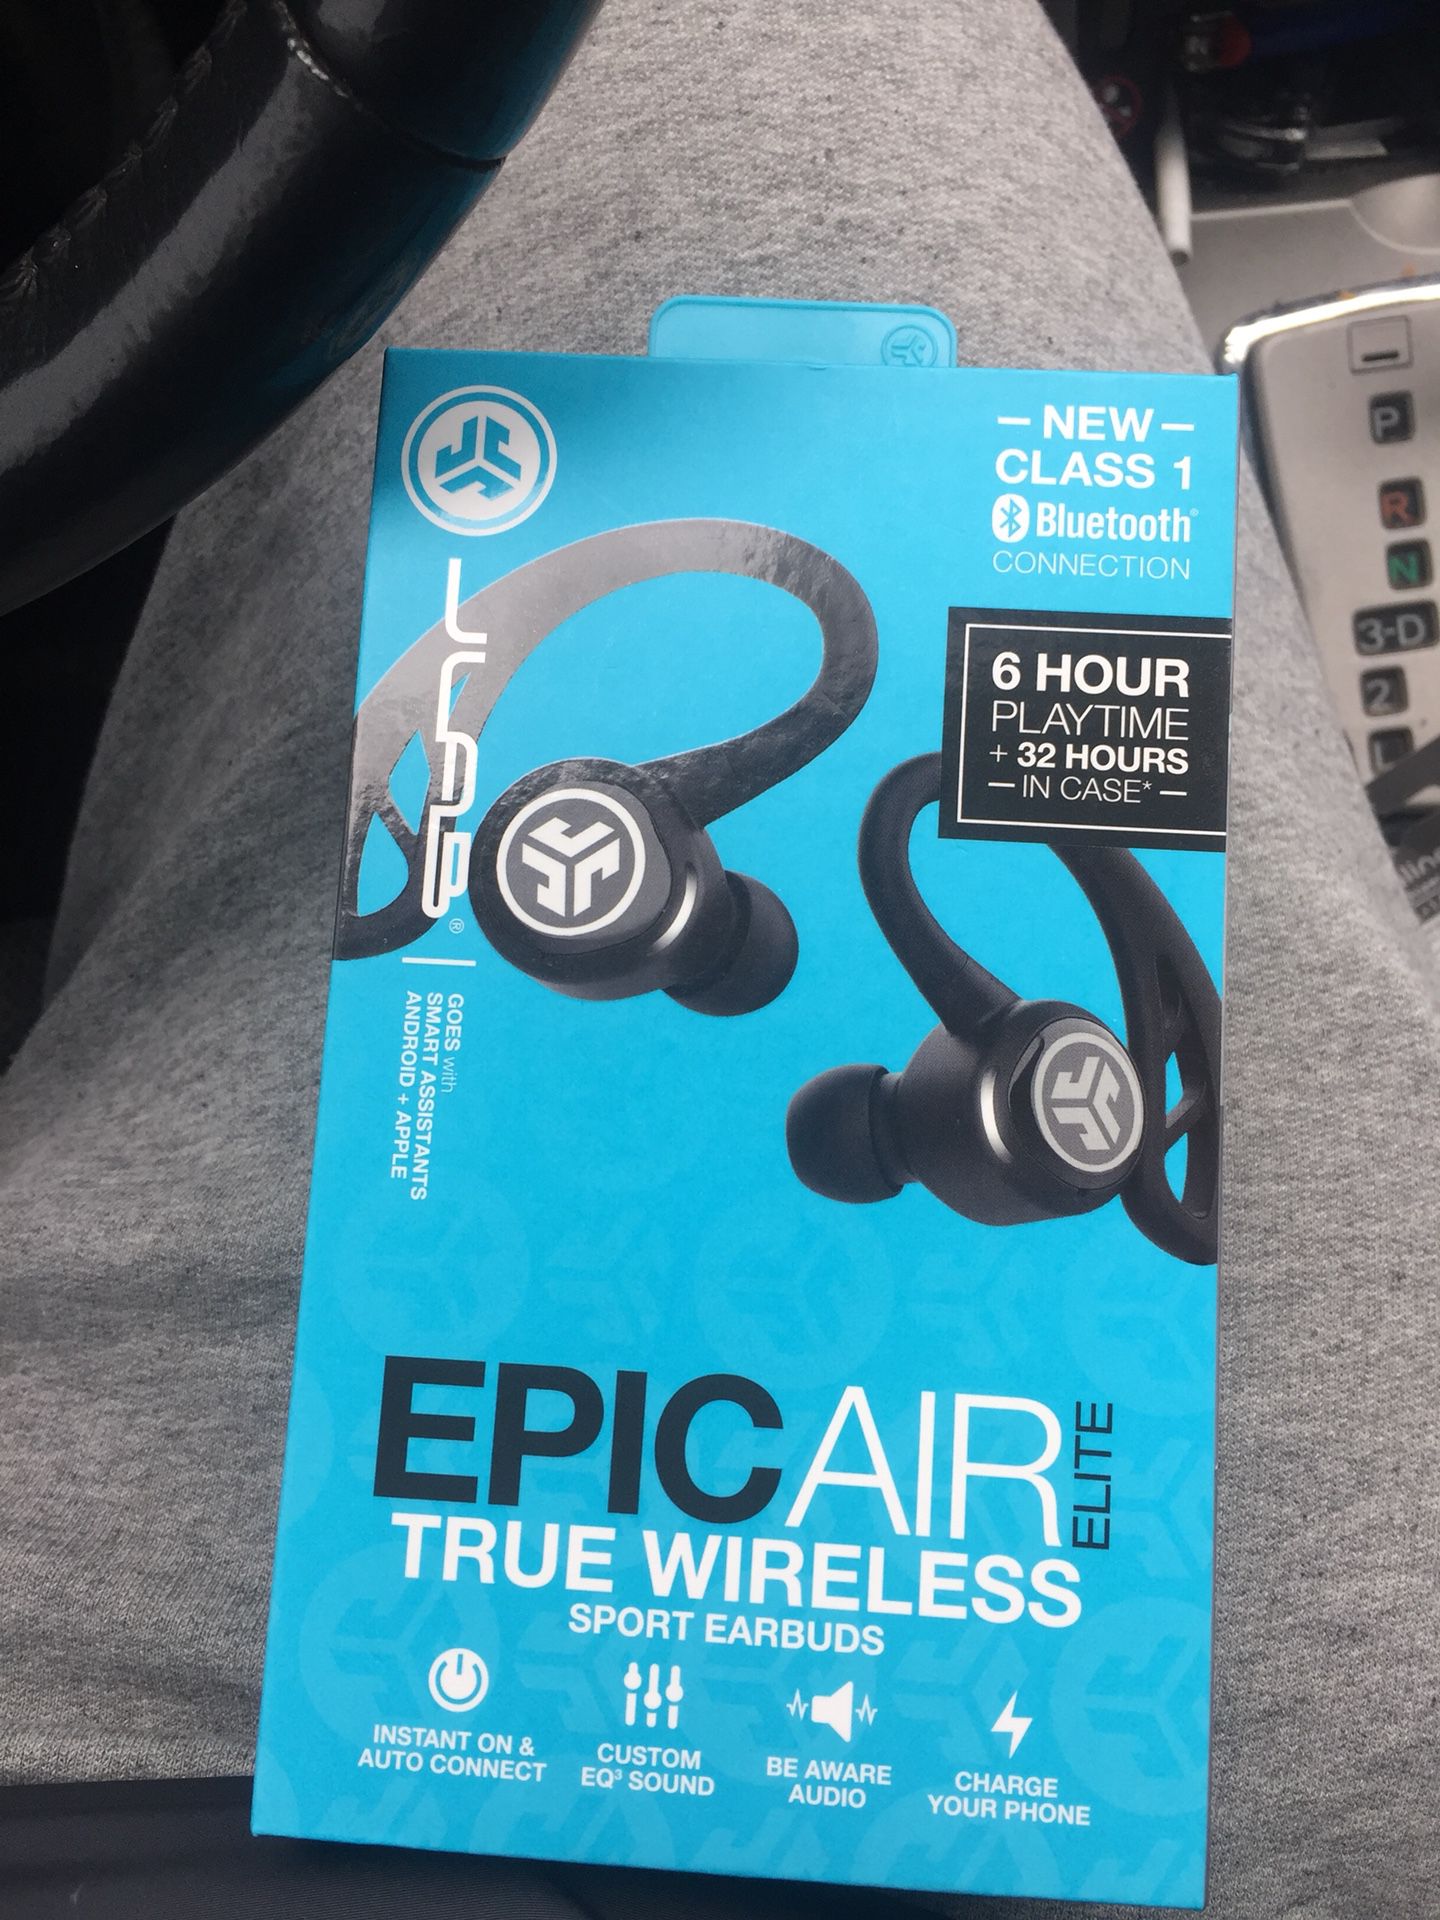 Epic air Elite wireless headphones